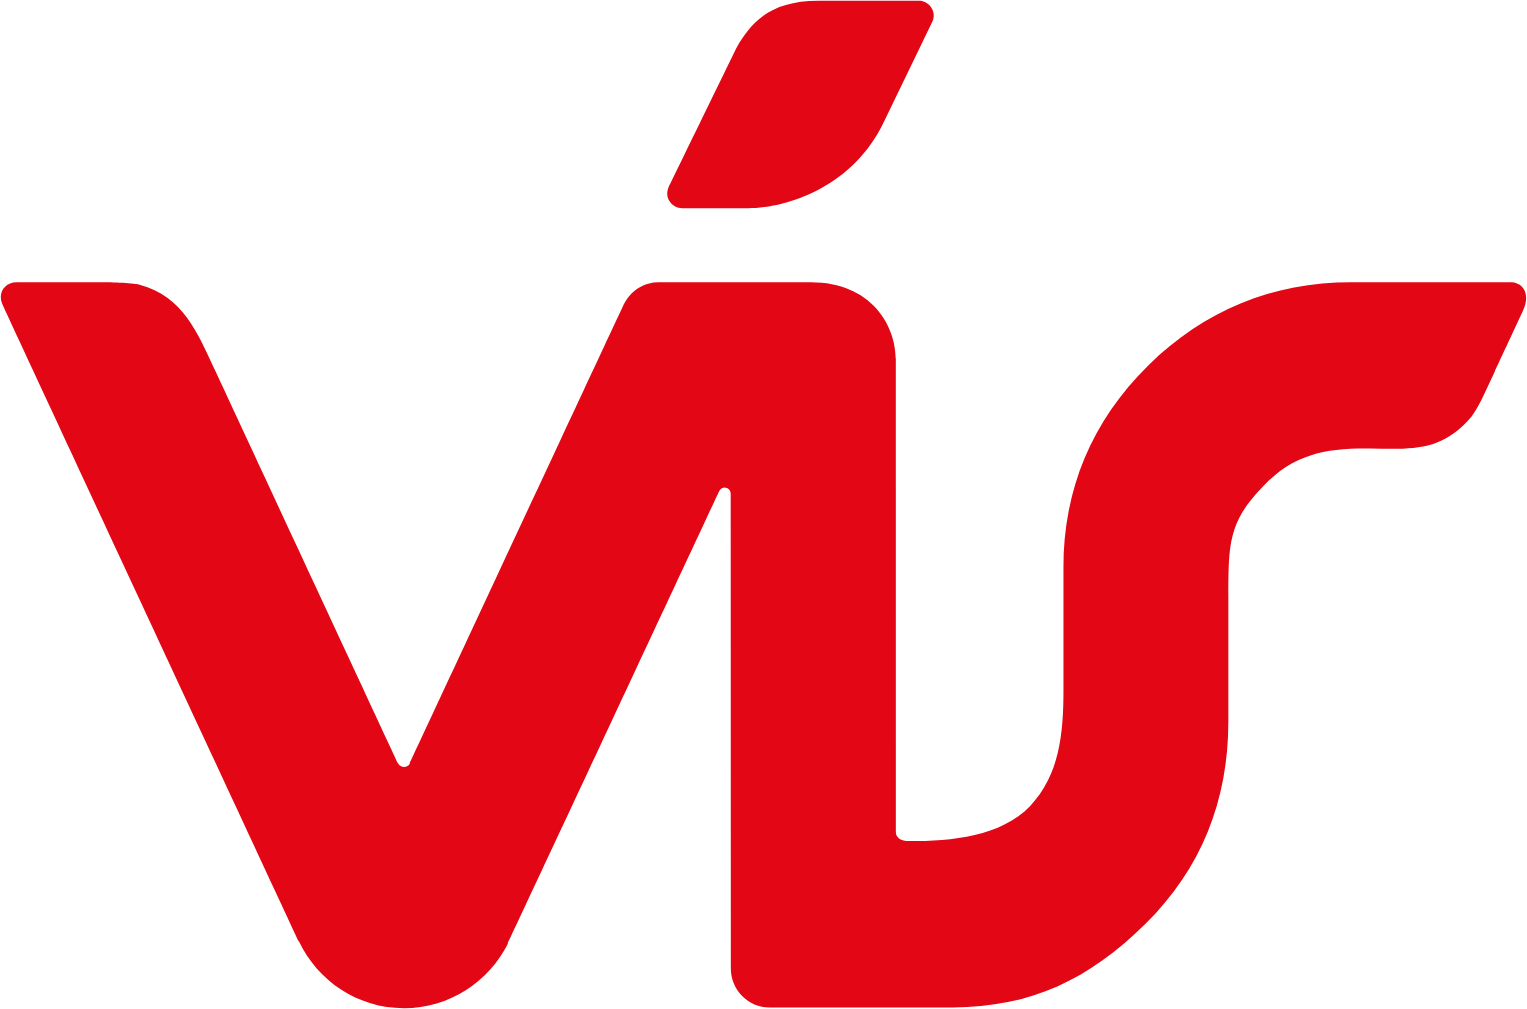 Vátryggingafélag Íslands logo (transparent PNG)